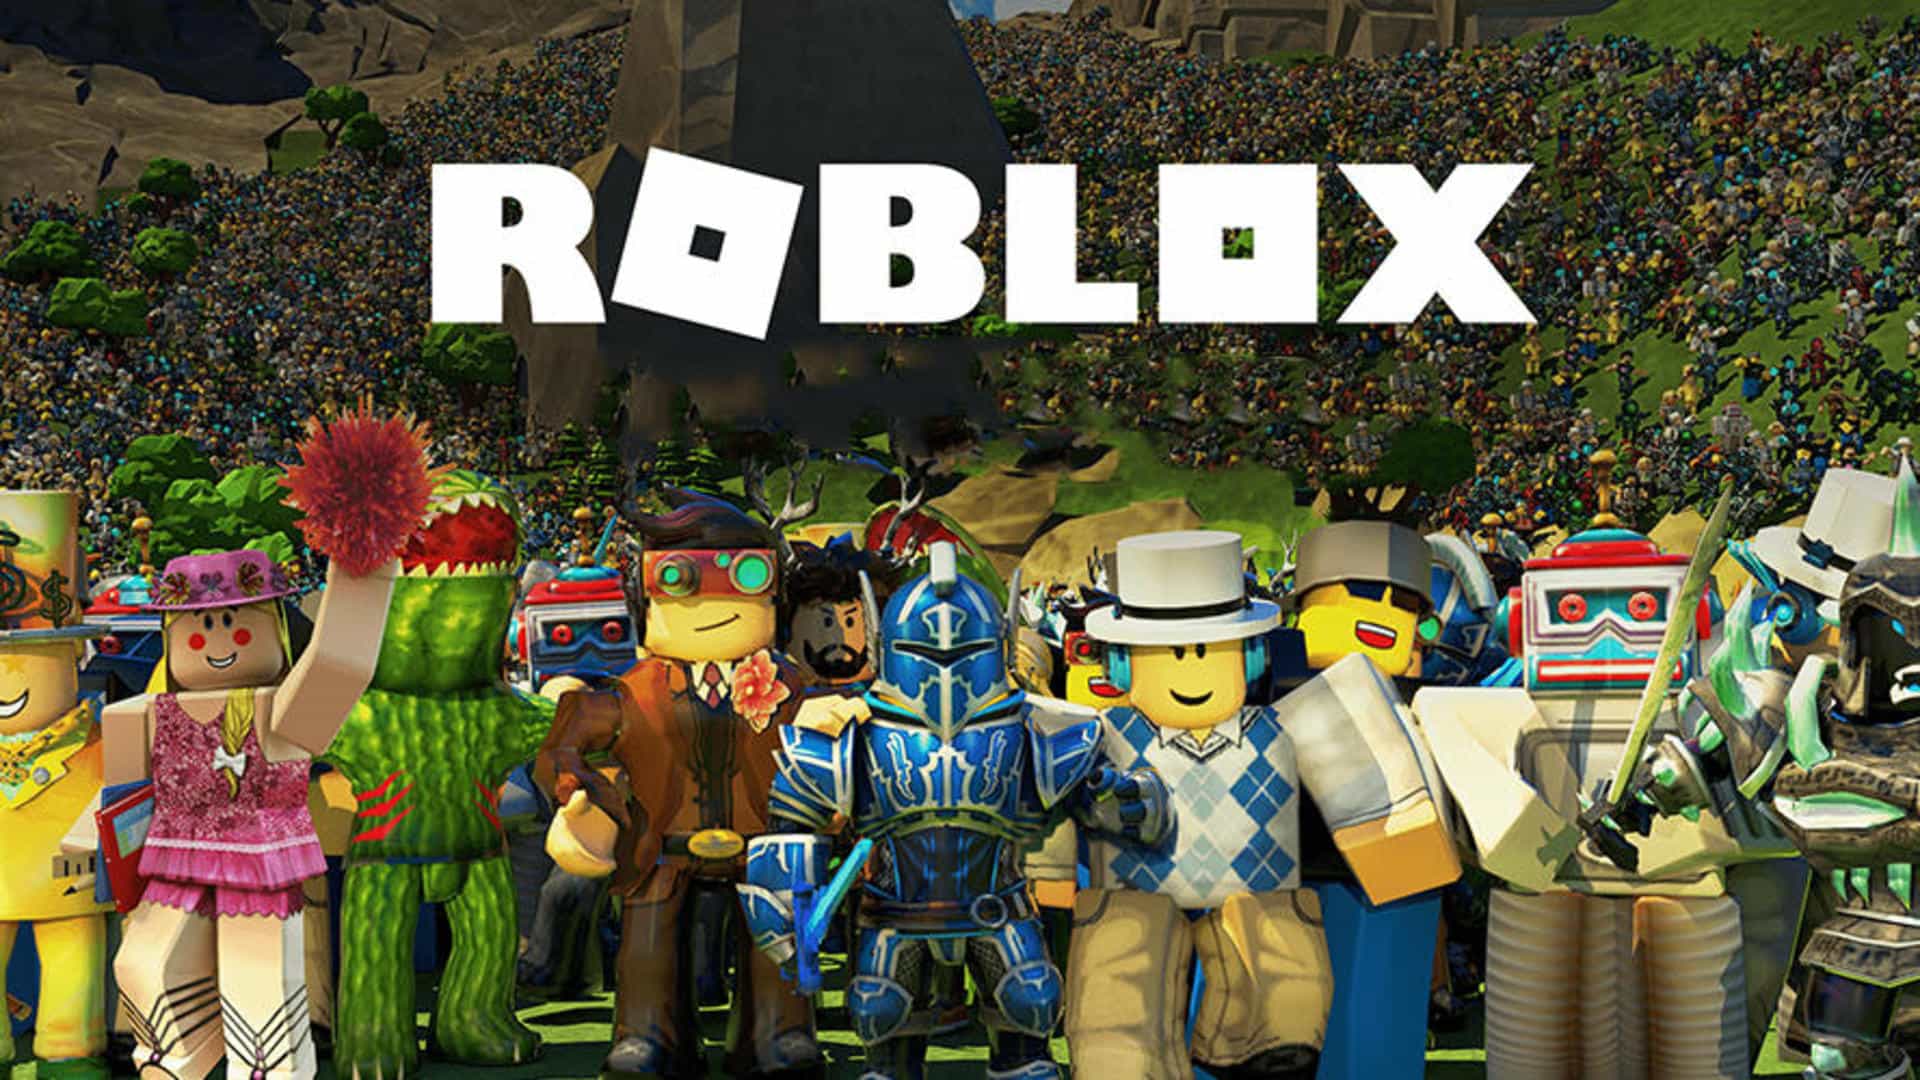 artwork del juego roblox con sus tipicos personajes hechos con bloques